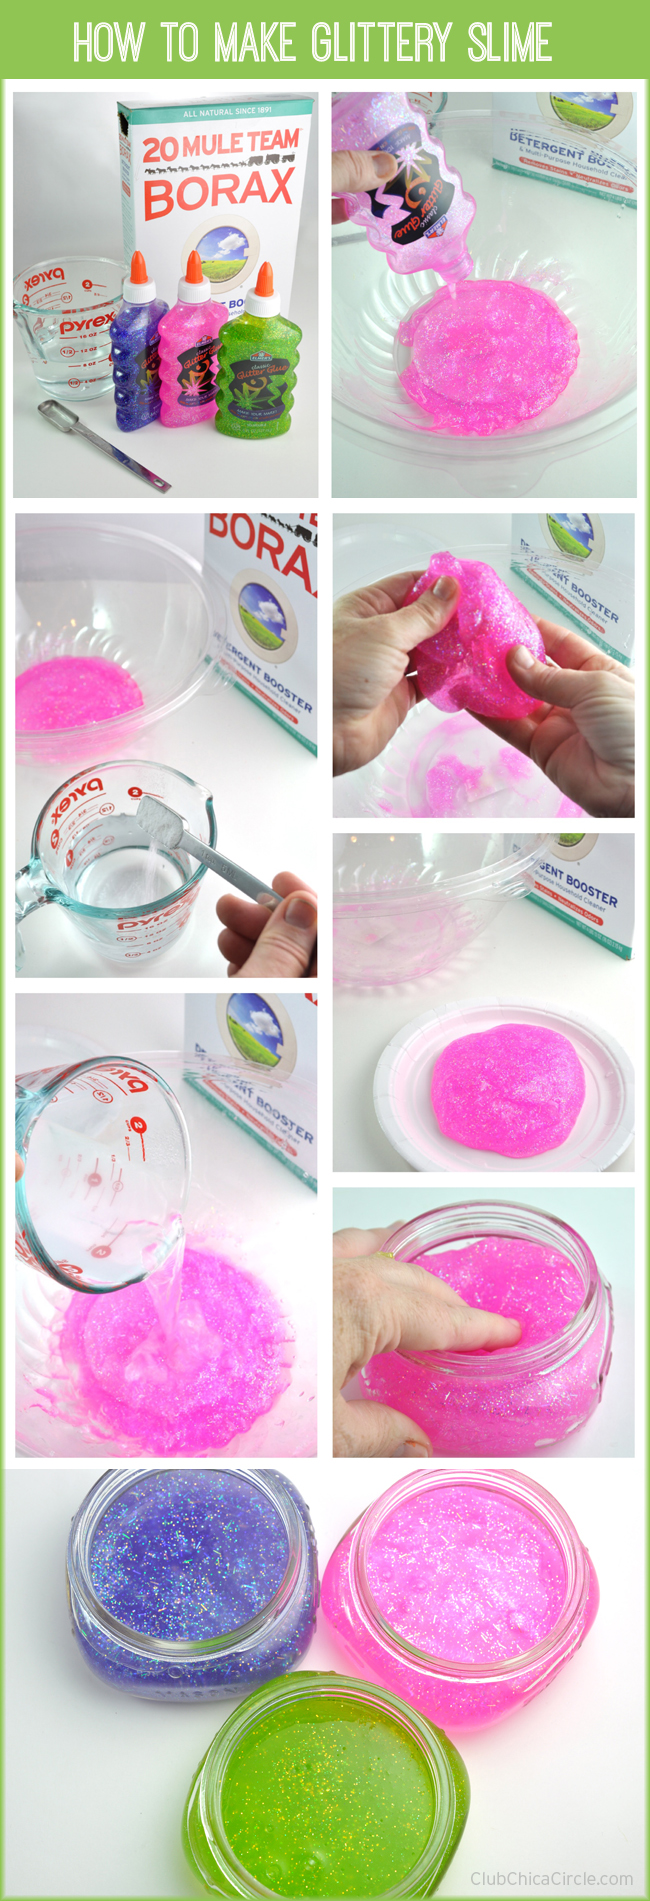 How to make easy homemade glittery slime for kids